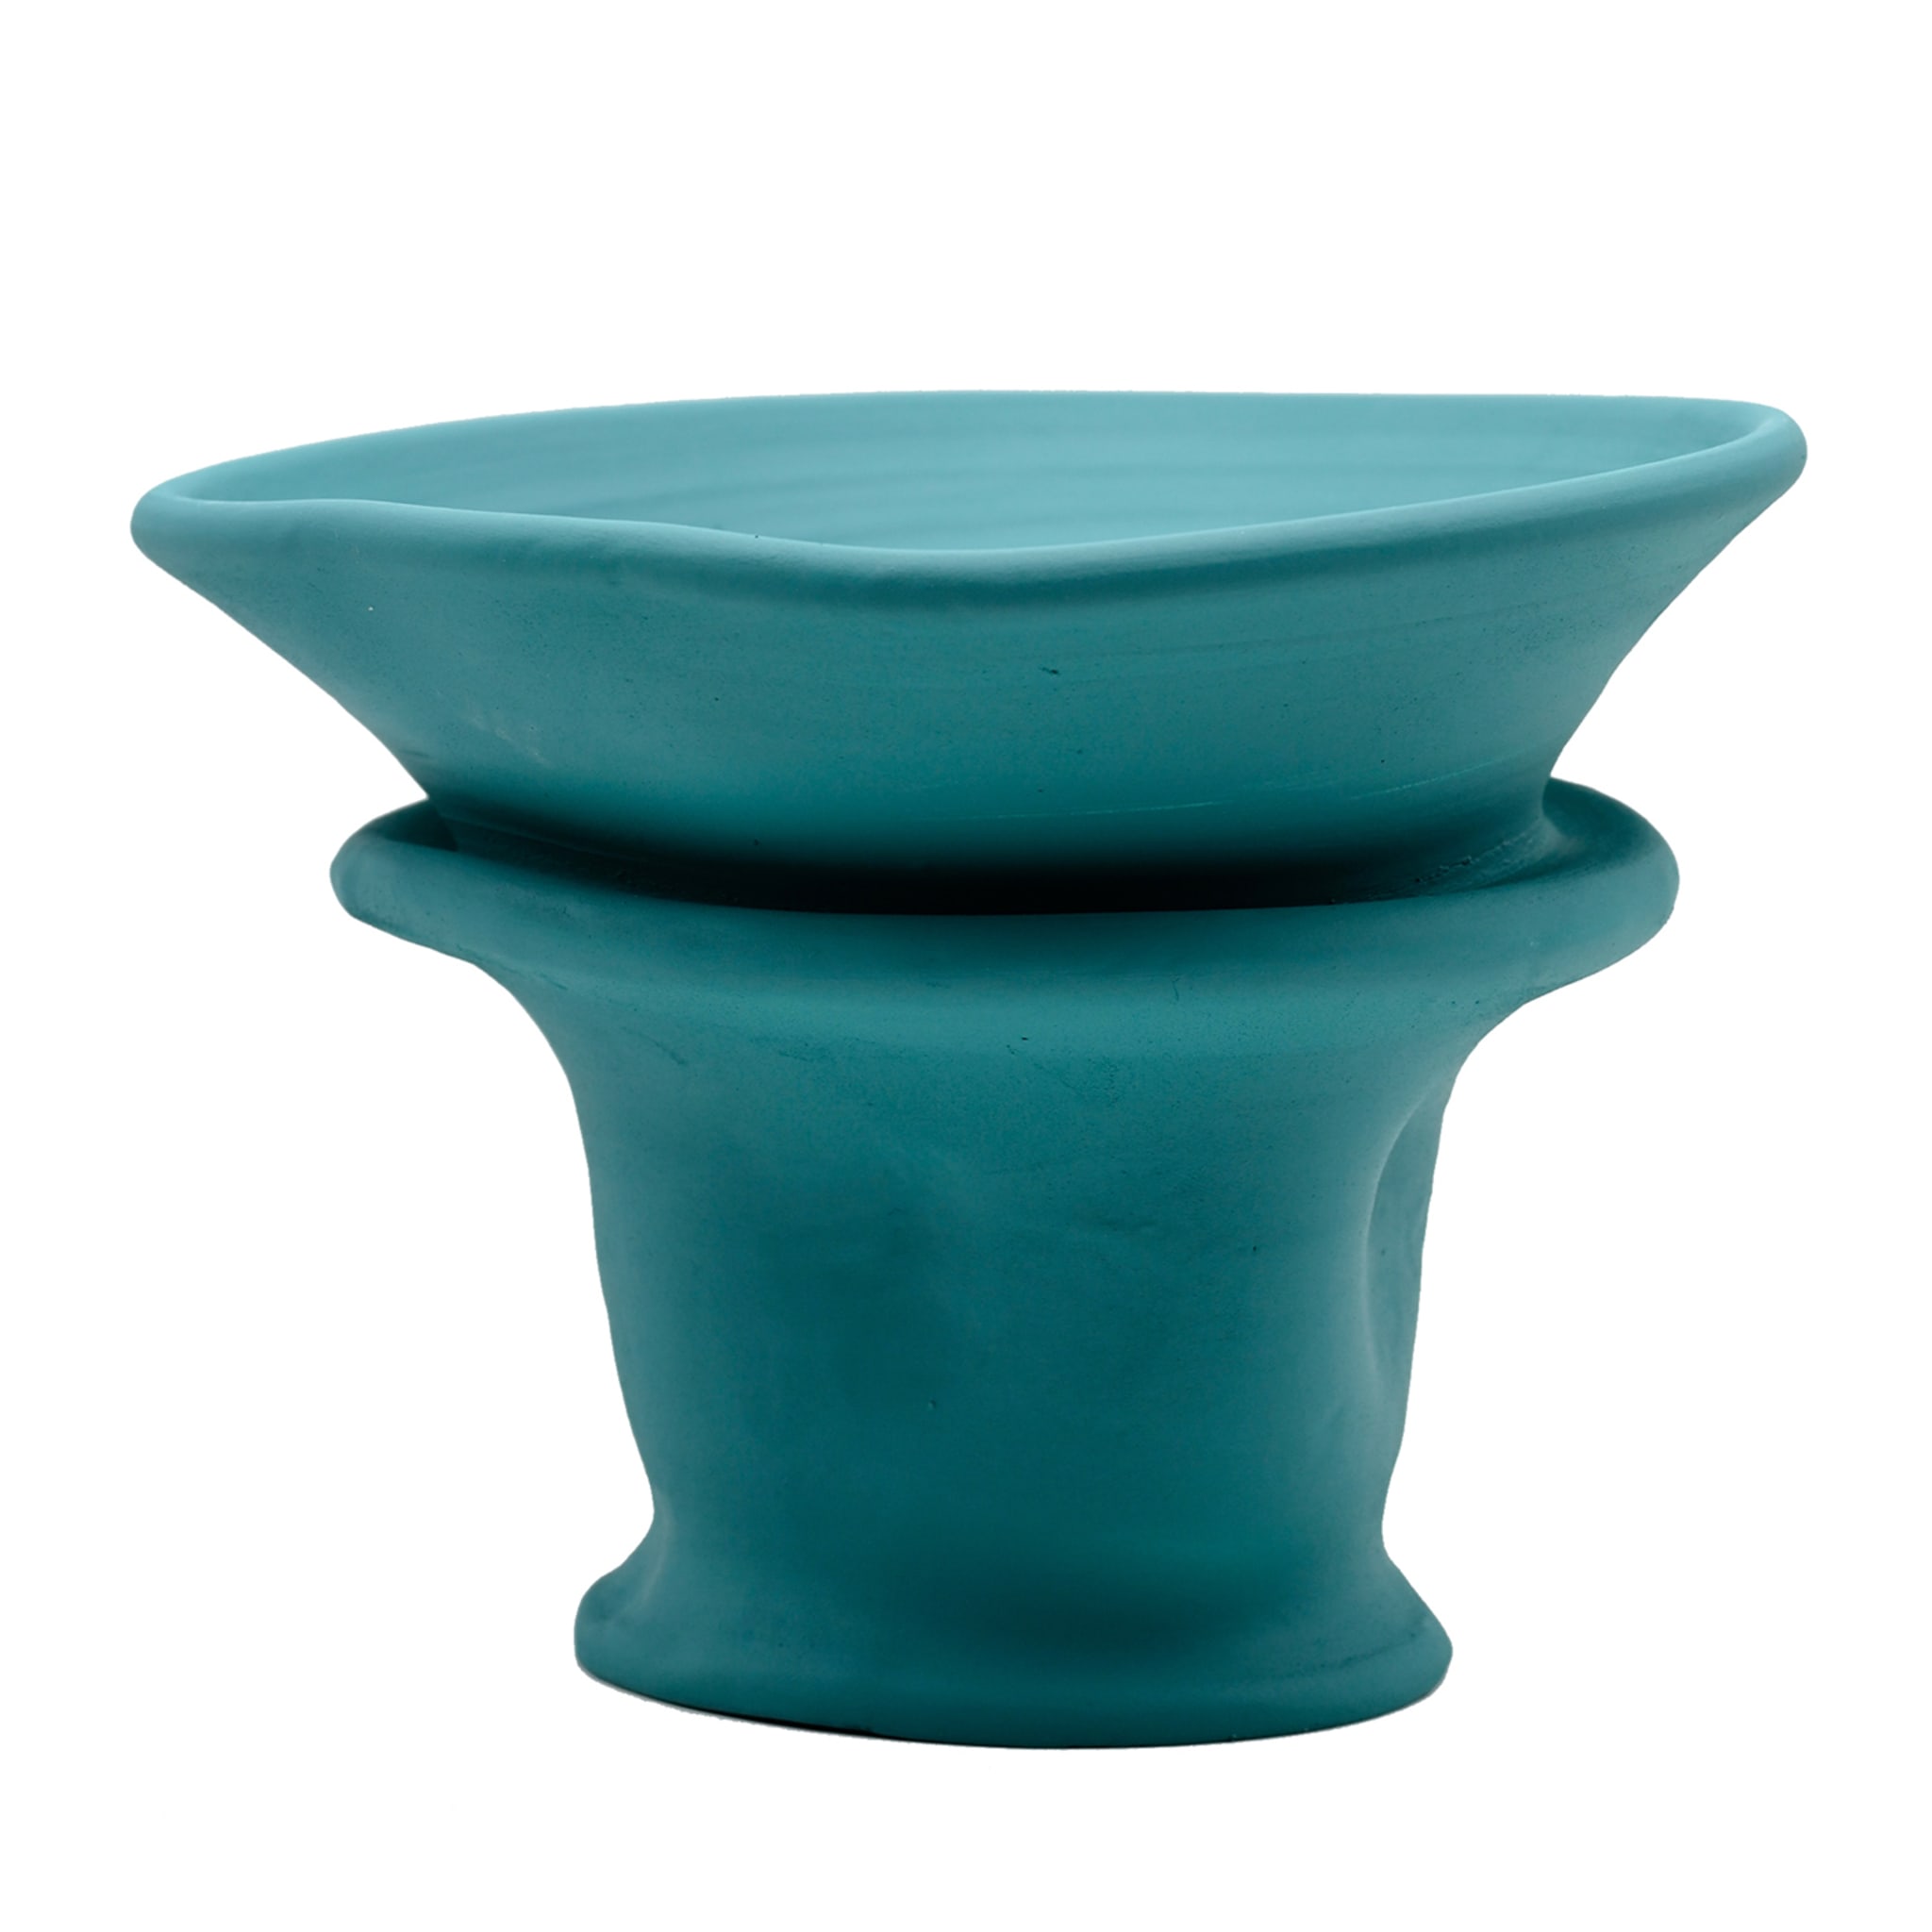 Türkisfarbene Vase #2 - Hauptansicht